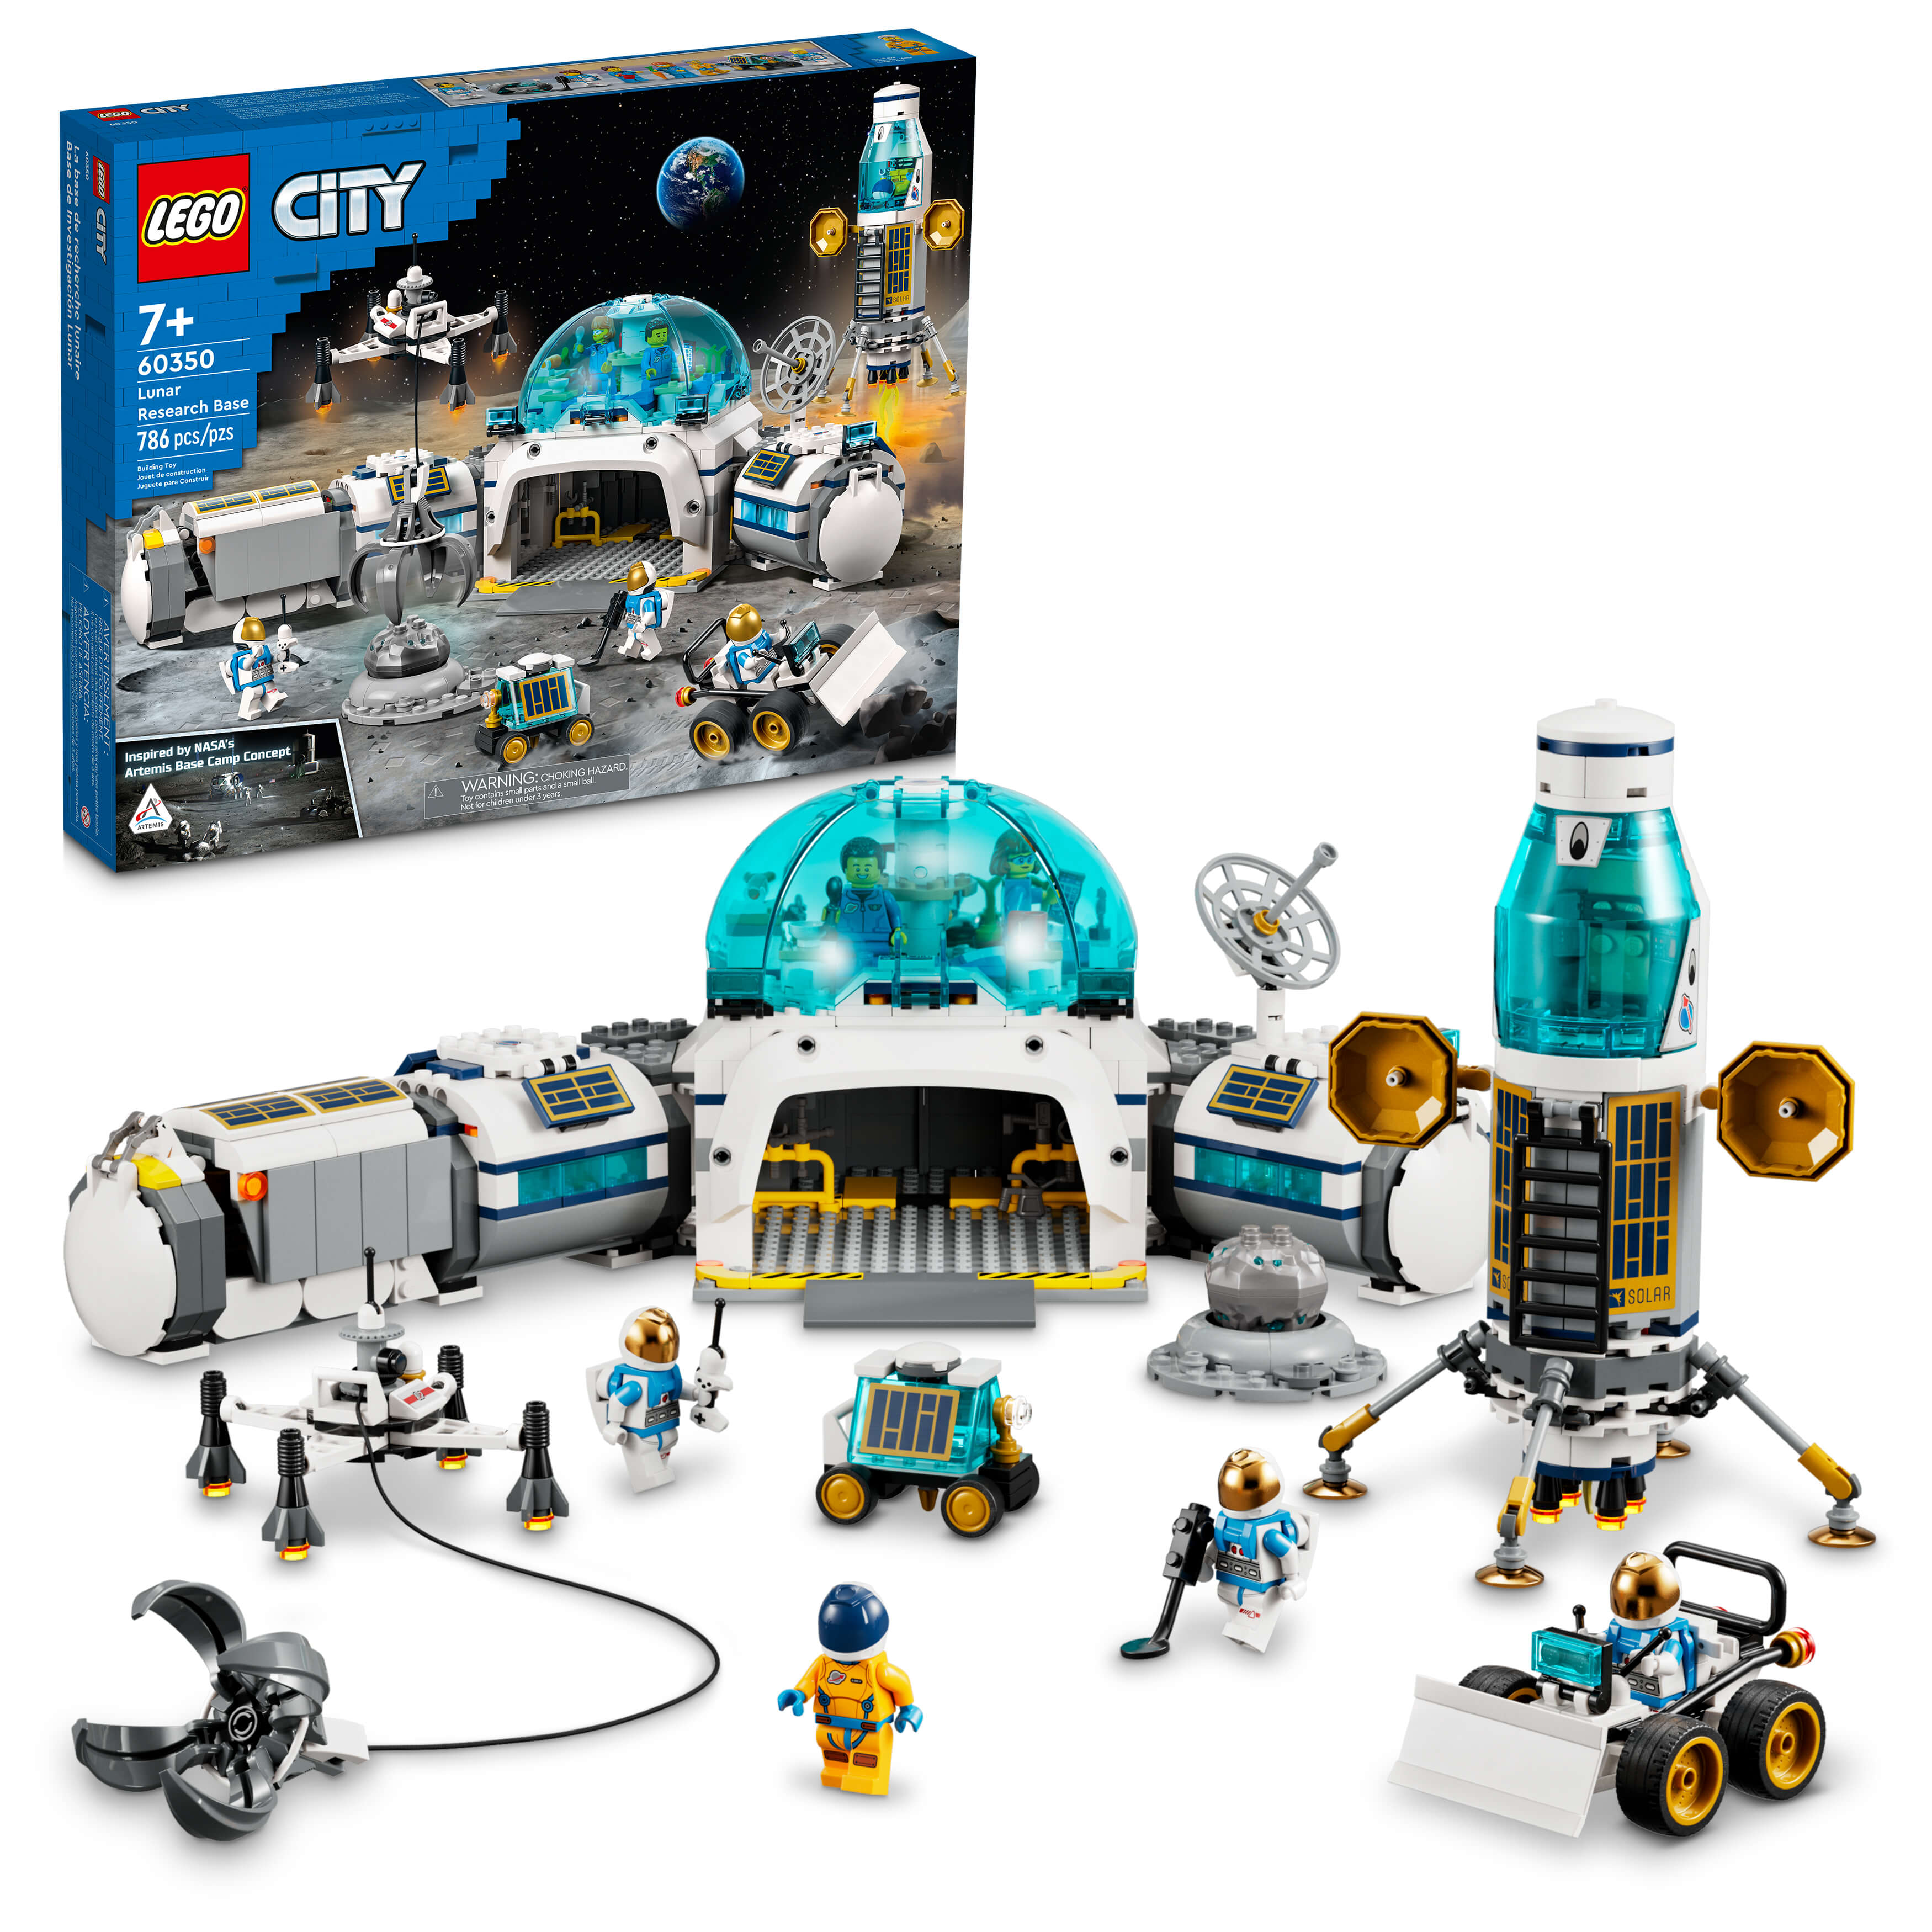 LEGO® City Lunar Research Base 60350 Building Kit (786 Pieces)